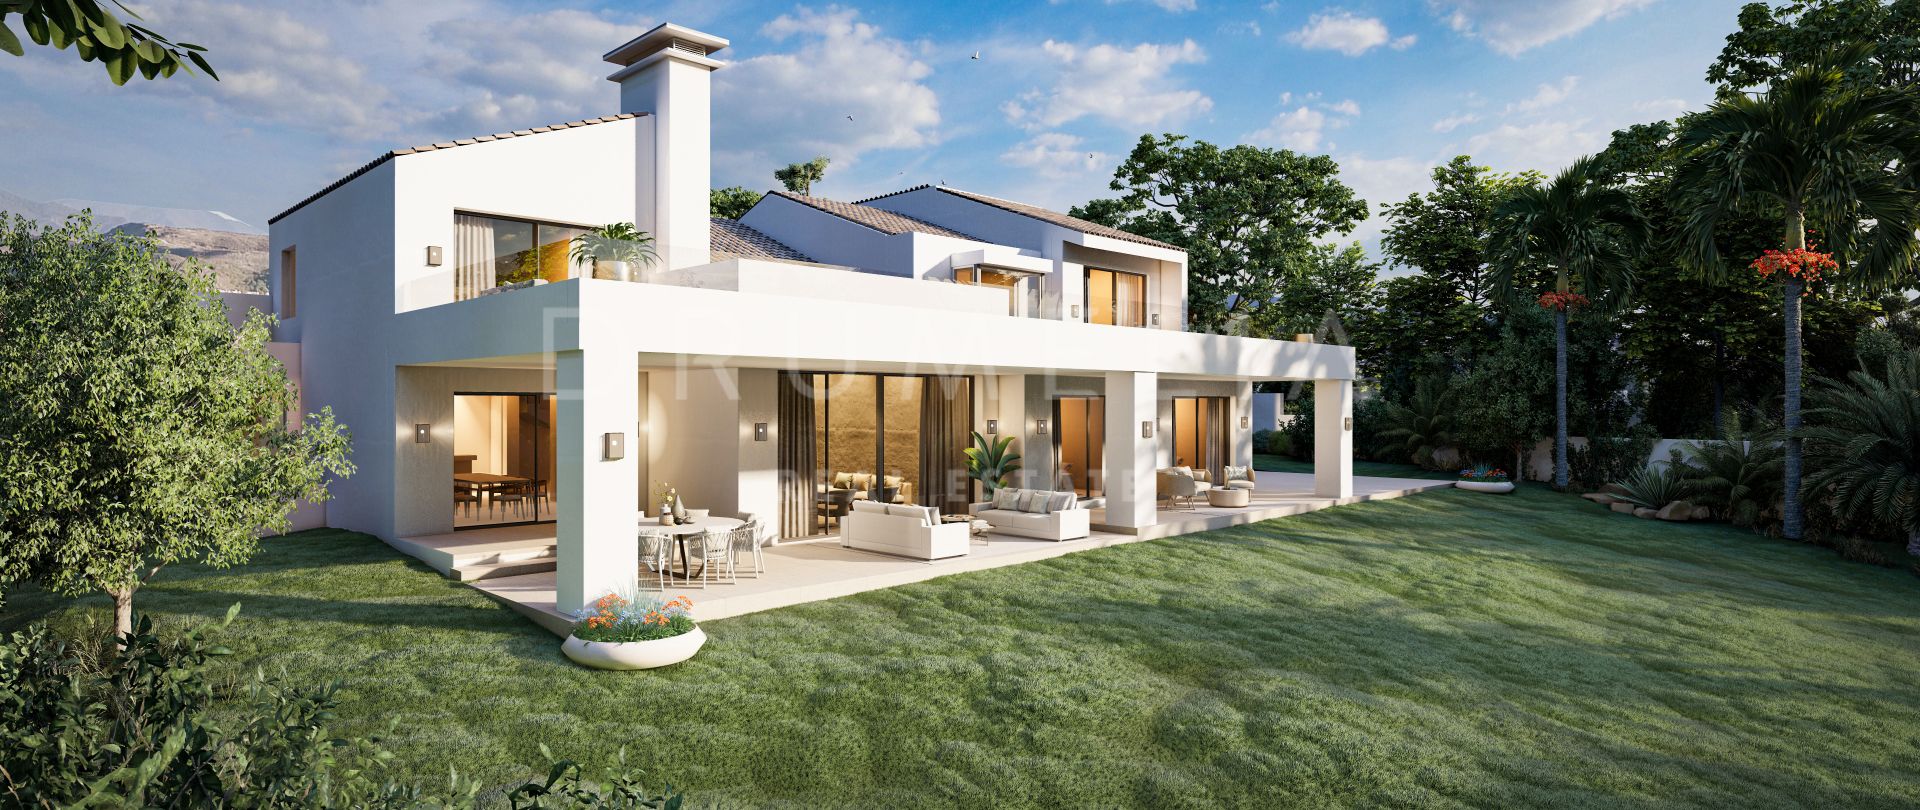 Luxuriöse mediterrane Villa mit großem Potenzial und Projekt in der High-End Rio Real, Marbella Ost